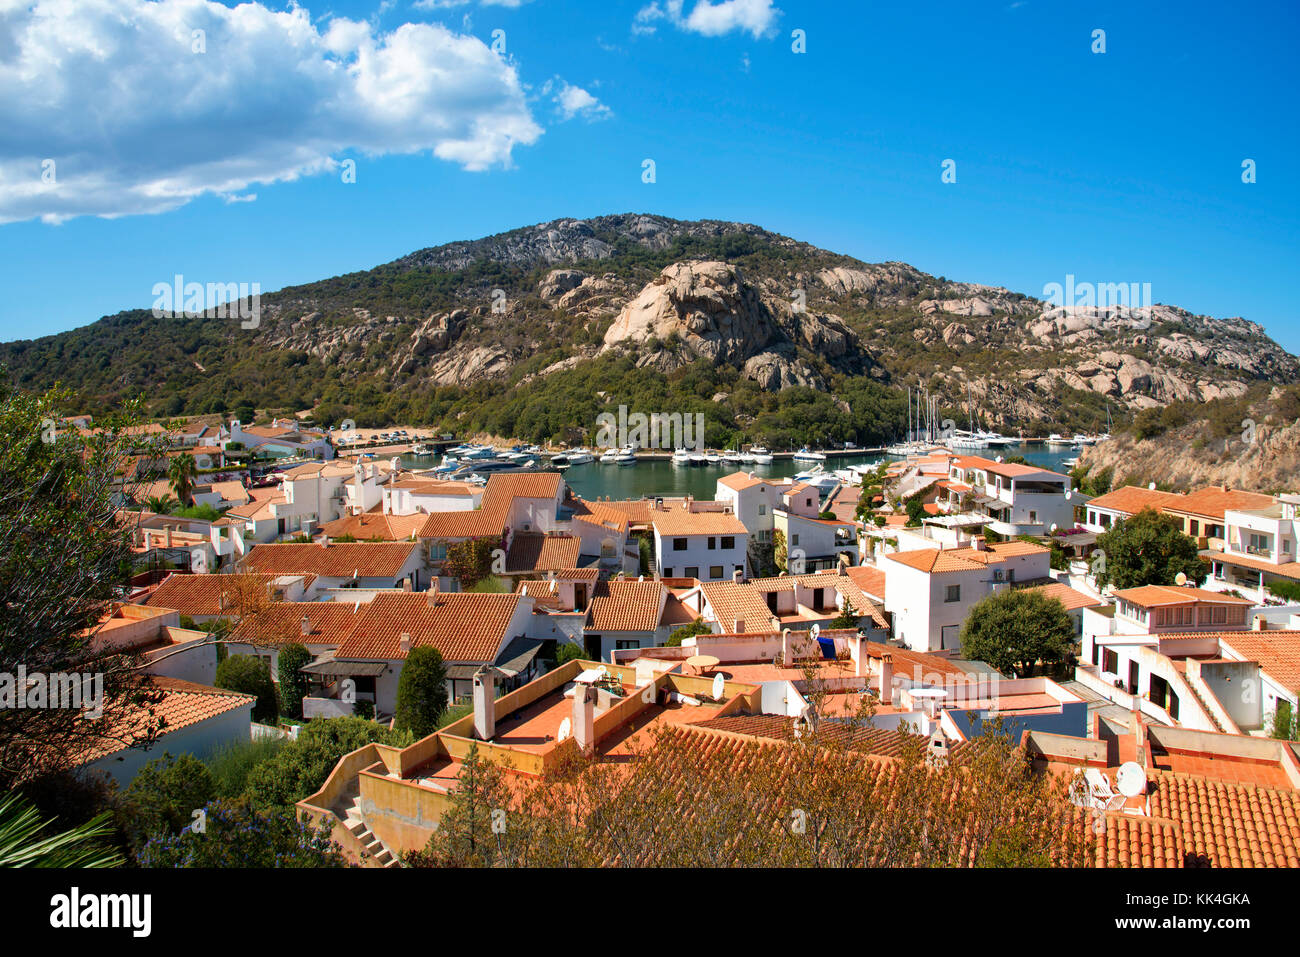 Una vista panoramica di Poltu Quatu, nella famosa Costa Smeralda, Sardegna, Italia, con il suo porticciolo sullo sfondo Foto Stock